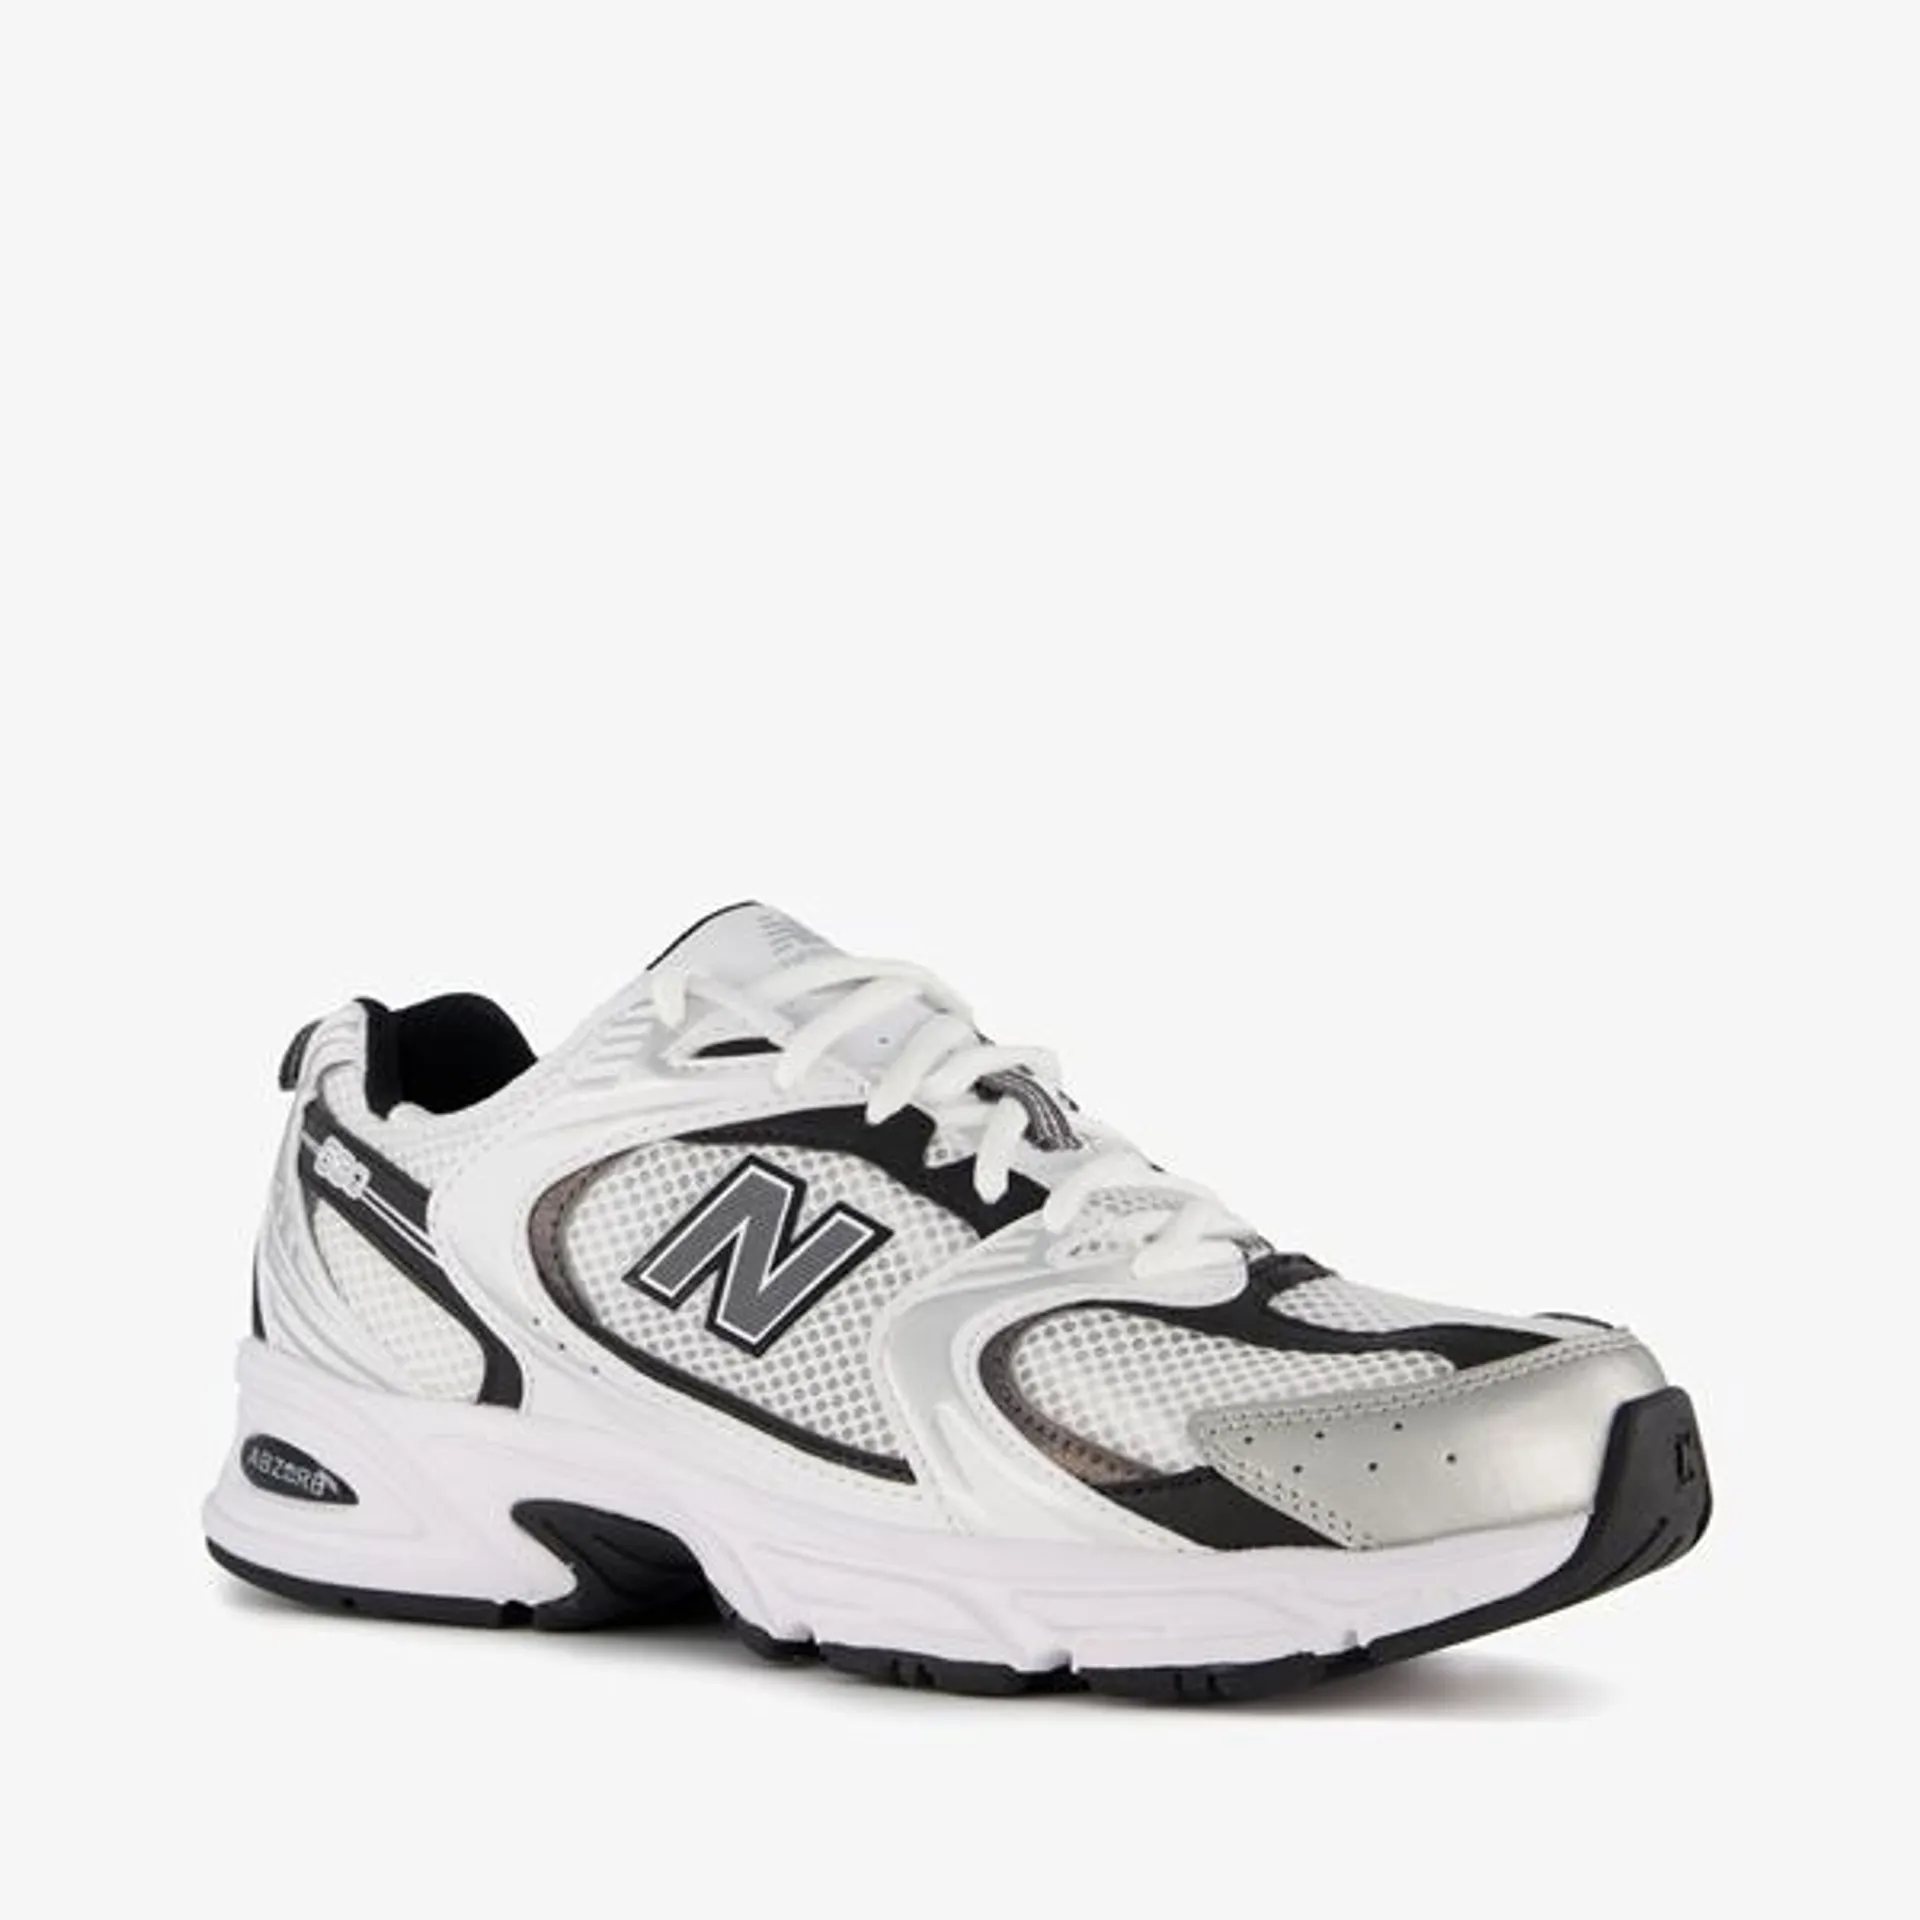 New Balance MR530 heren sneakers wit zwart